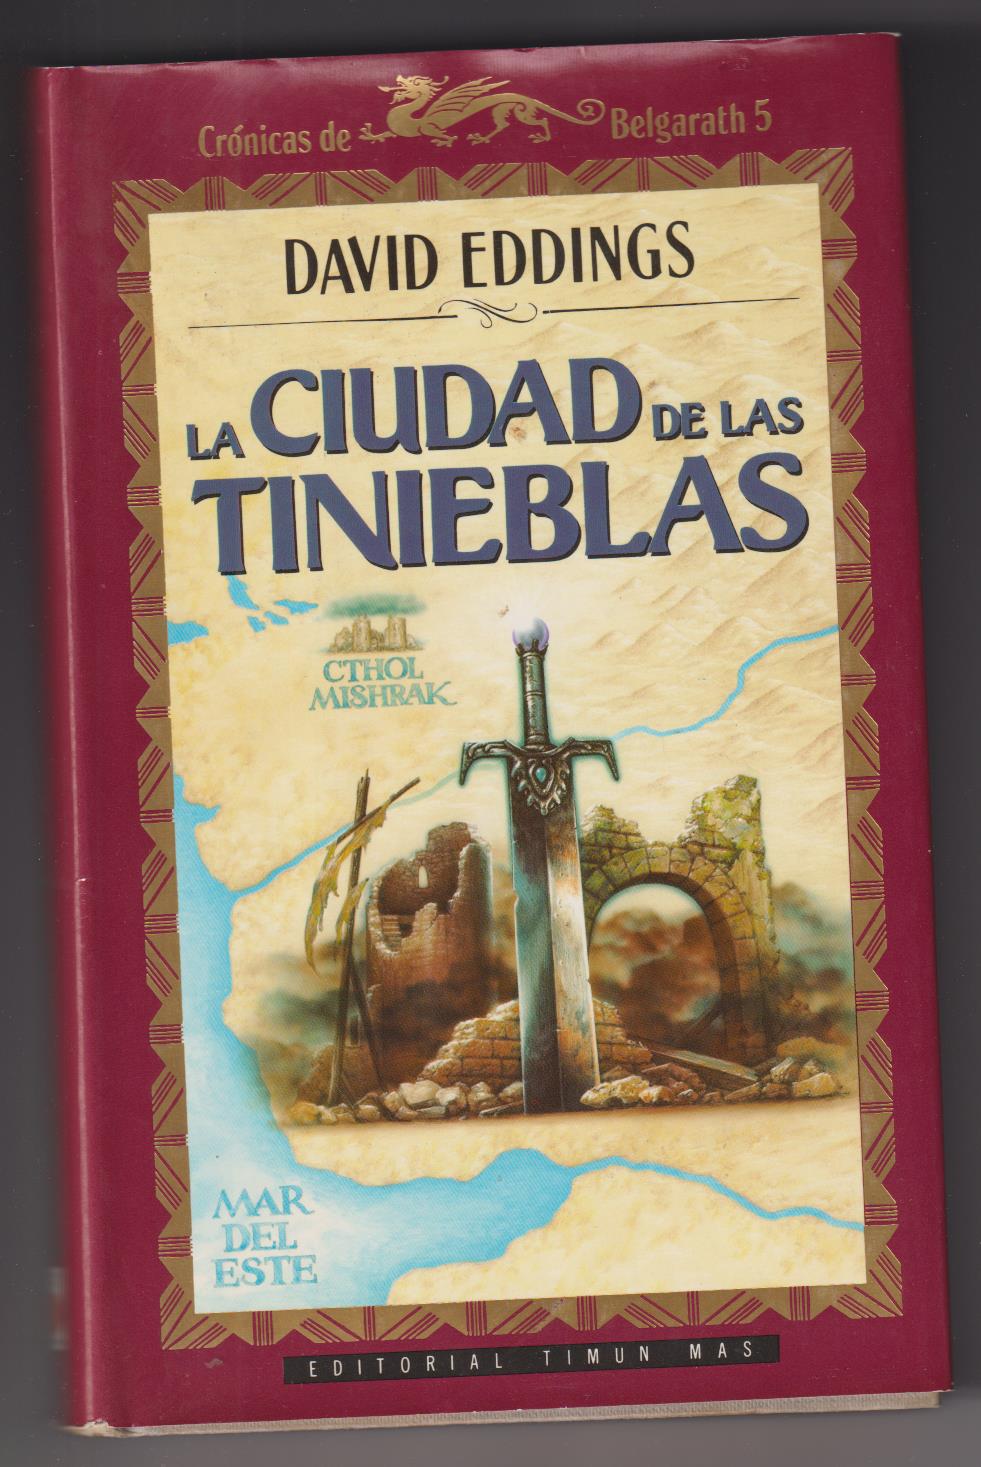 David Eddings. la Ciudad de las Tinieblas. Editorial Timun Mas 1991. SIN USAR